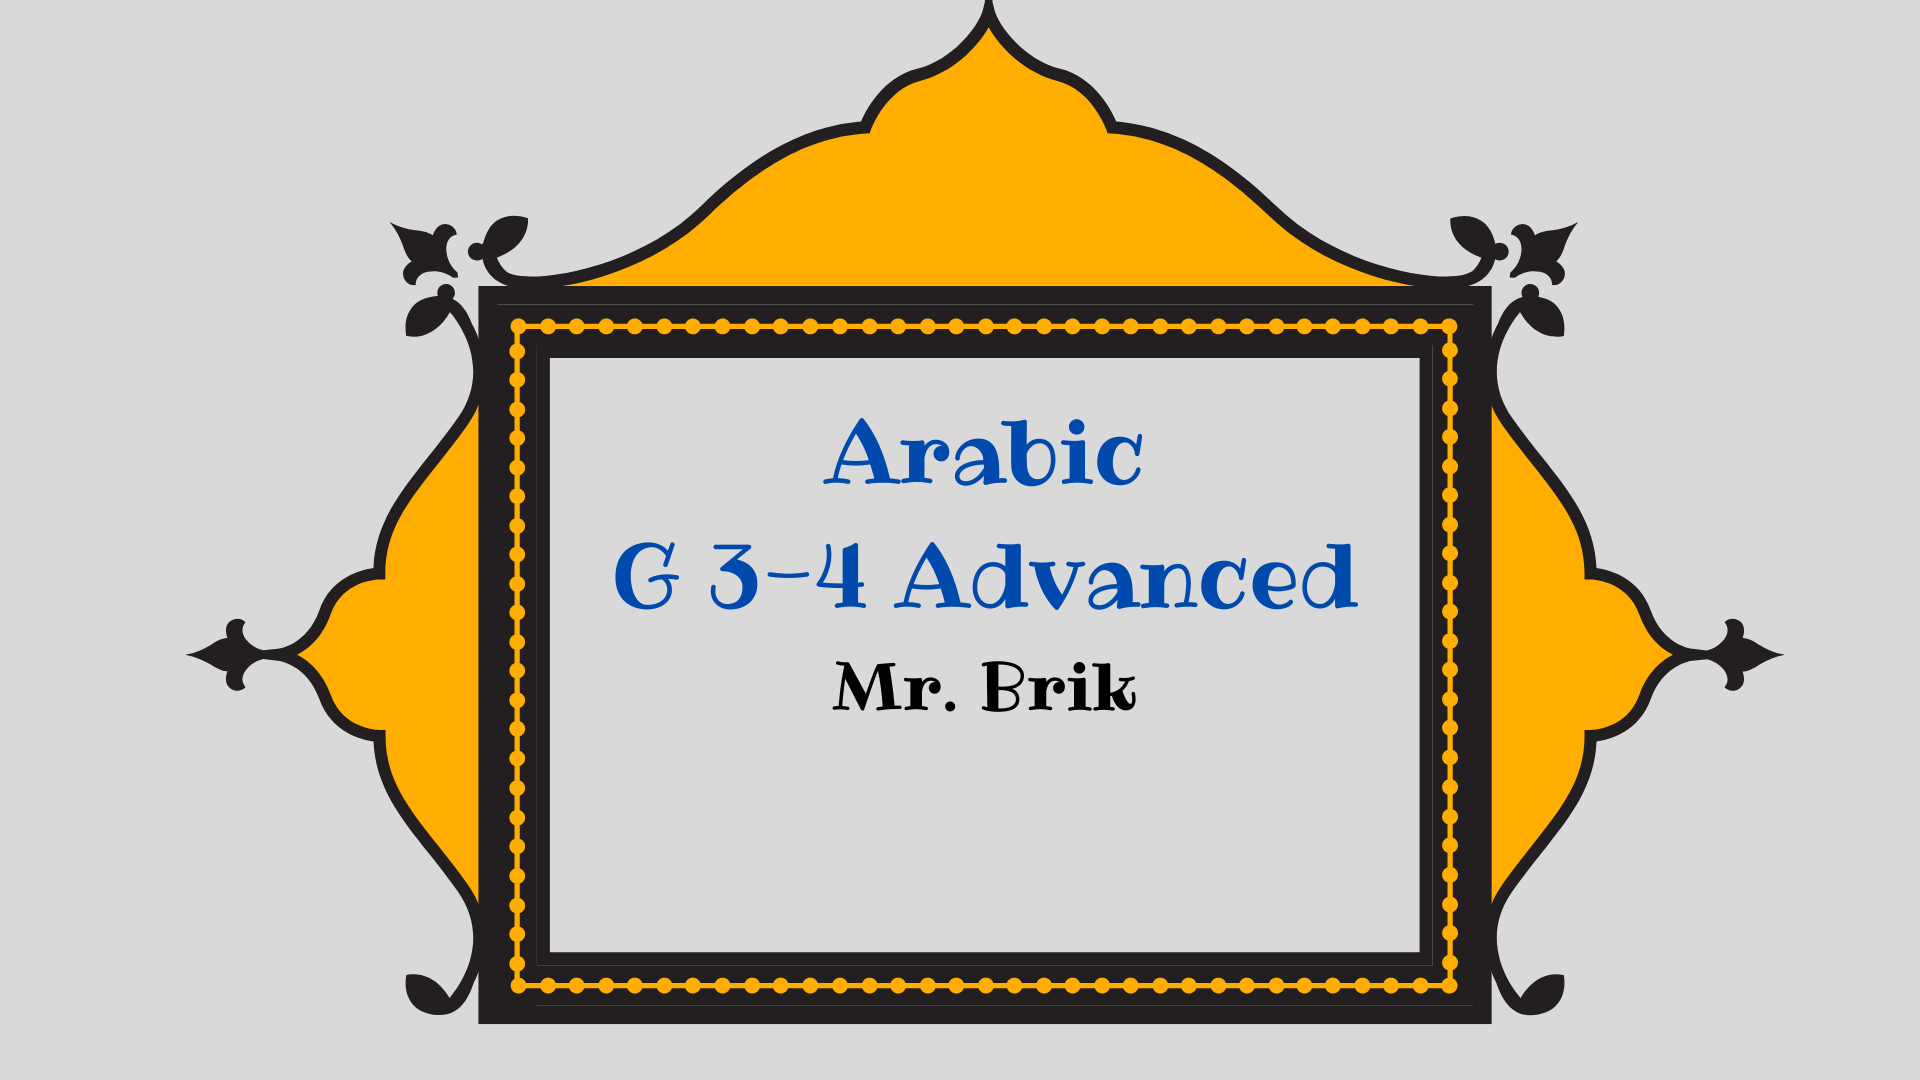 Arabic G3-G4 Advanced 